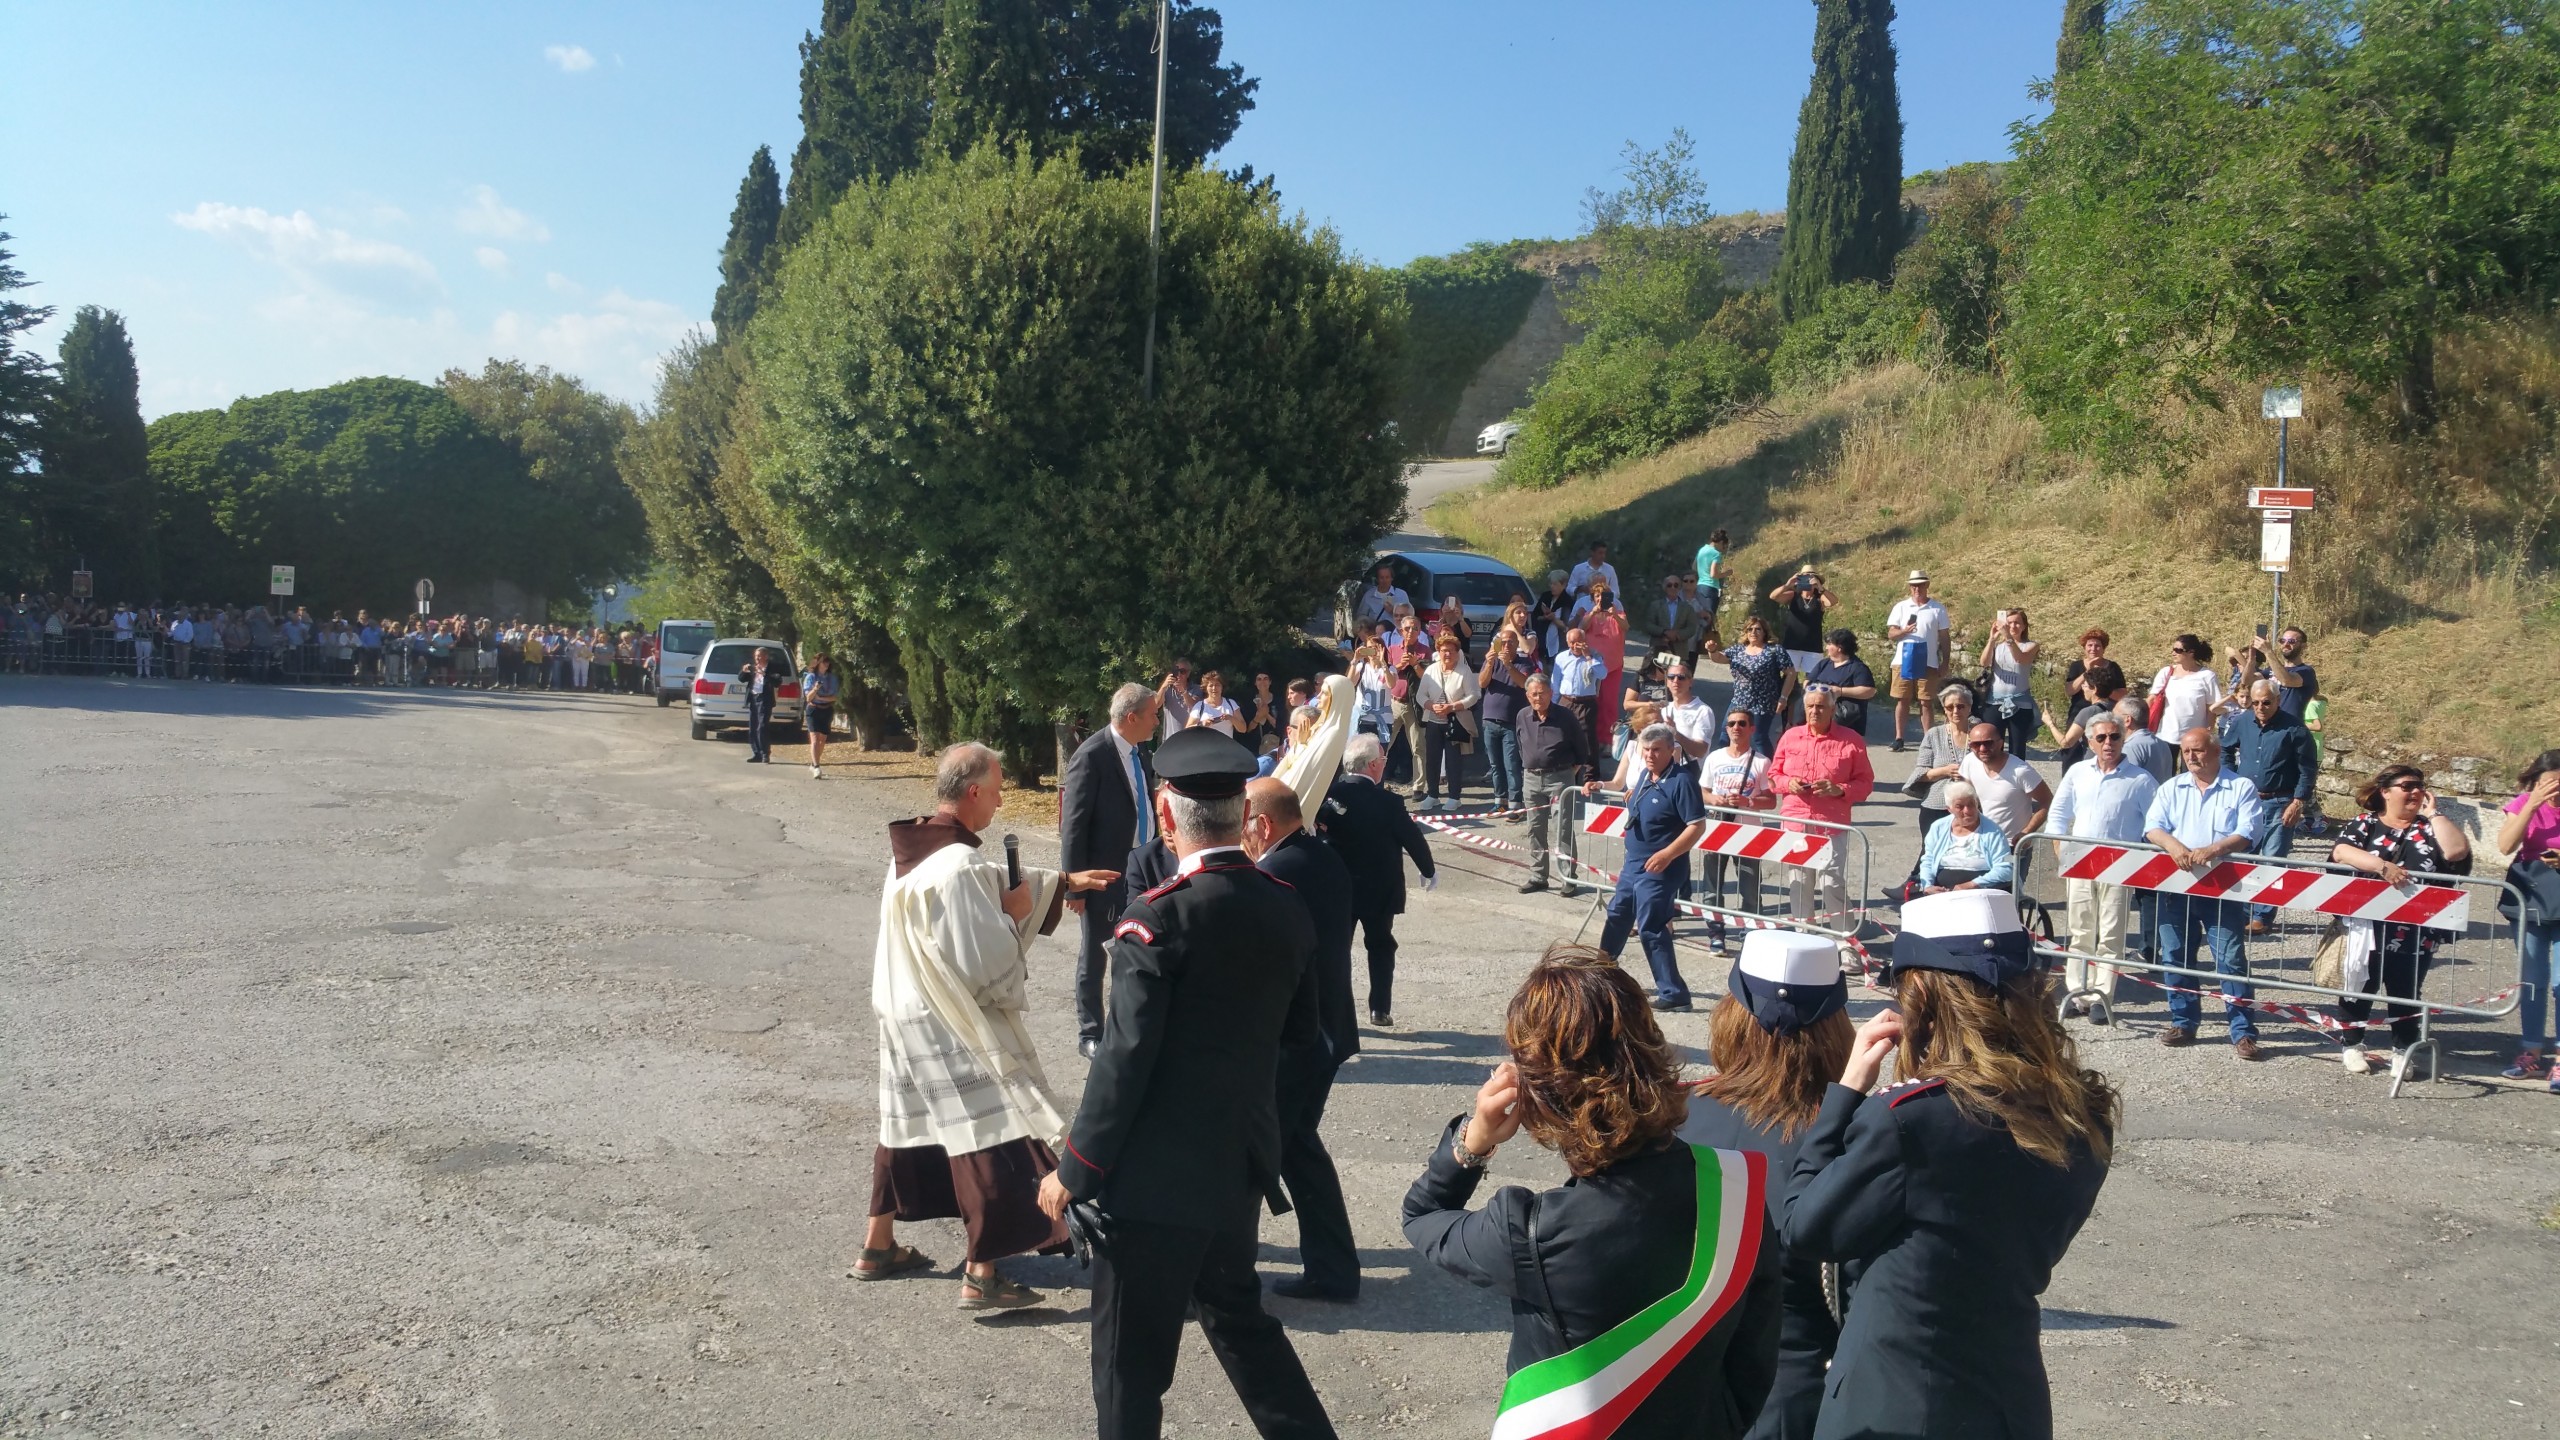 La Madonnina di Fatima è arrivata a Cortona - TUTTE LE FOTO